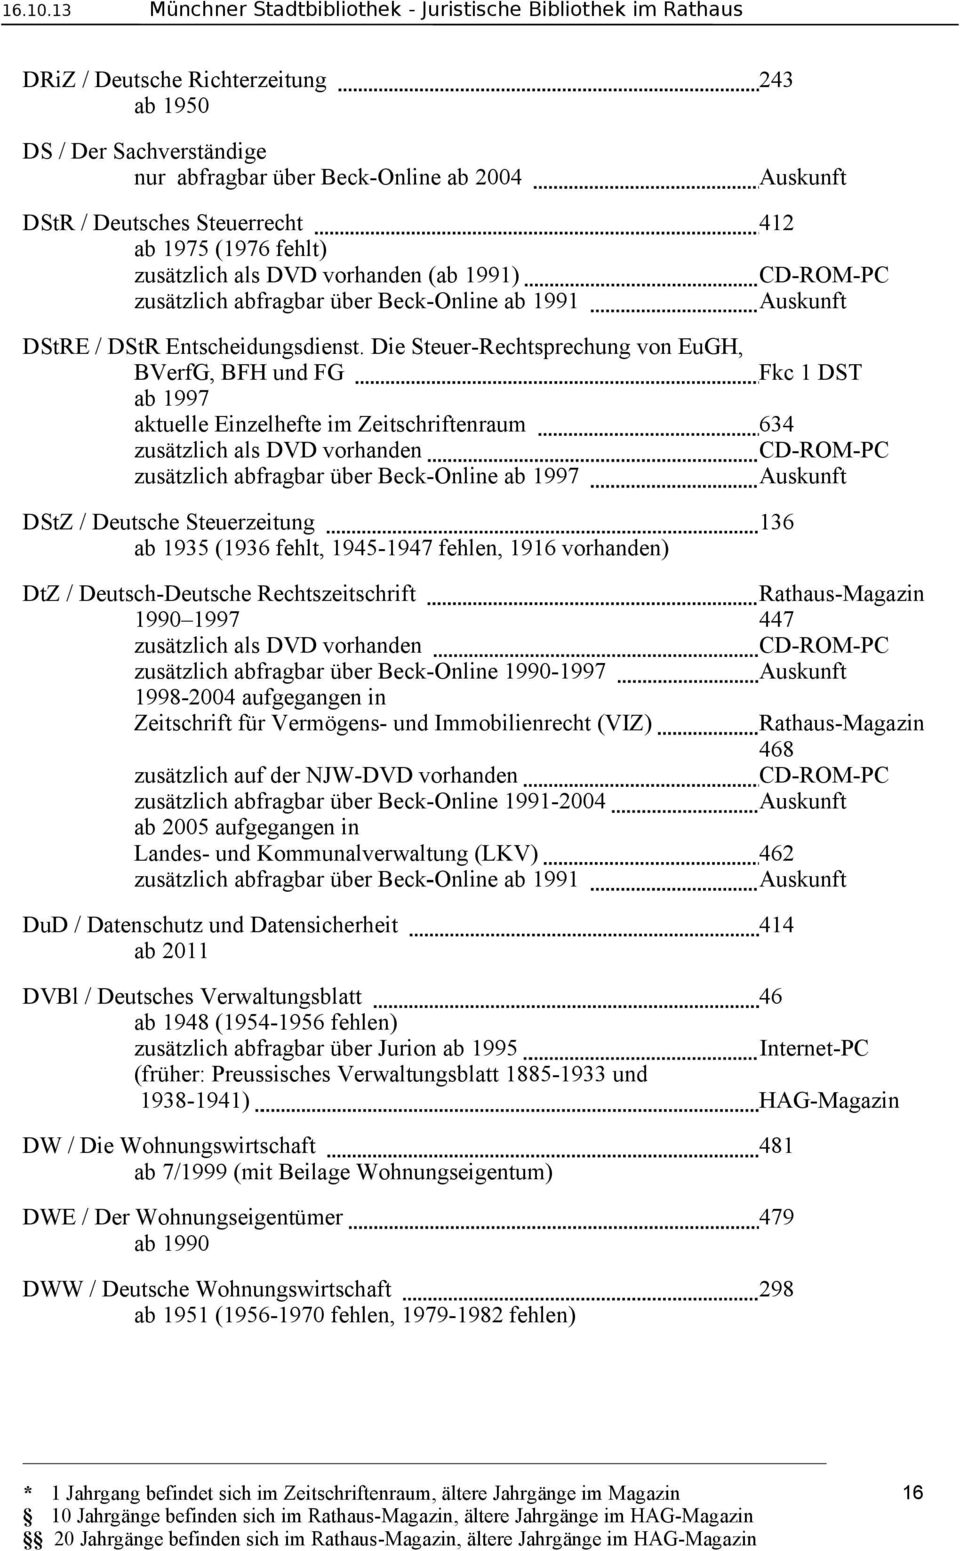 Die Steuer-Rechtsprechung von EuGH, BVerfG, BFH und FG Fkc 1 DST ab 1997 aktuelle Einzelhefte im Zeitschriftenraum 634 zusätzlich als DVD vorhanden zusätzlich abfragbar über Beck-Online ab 1997 DStZ